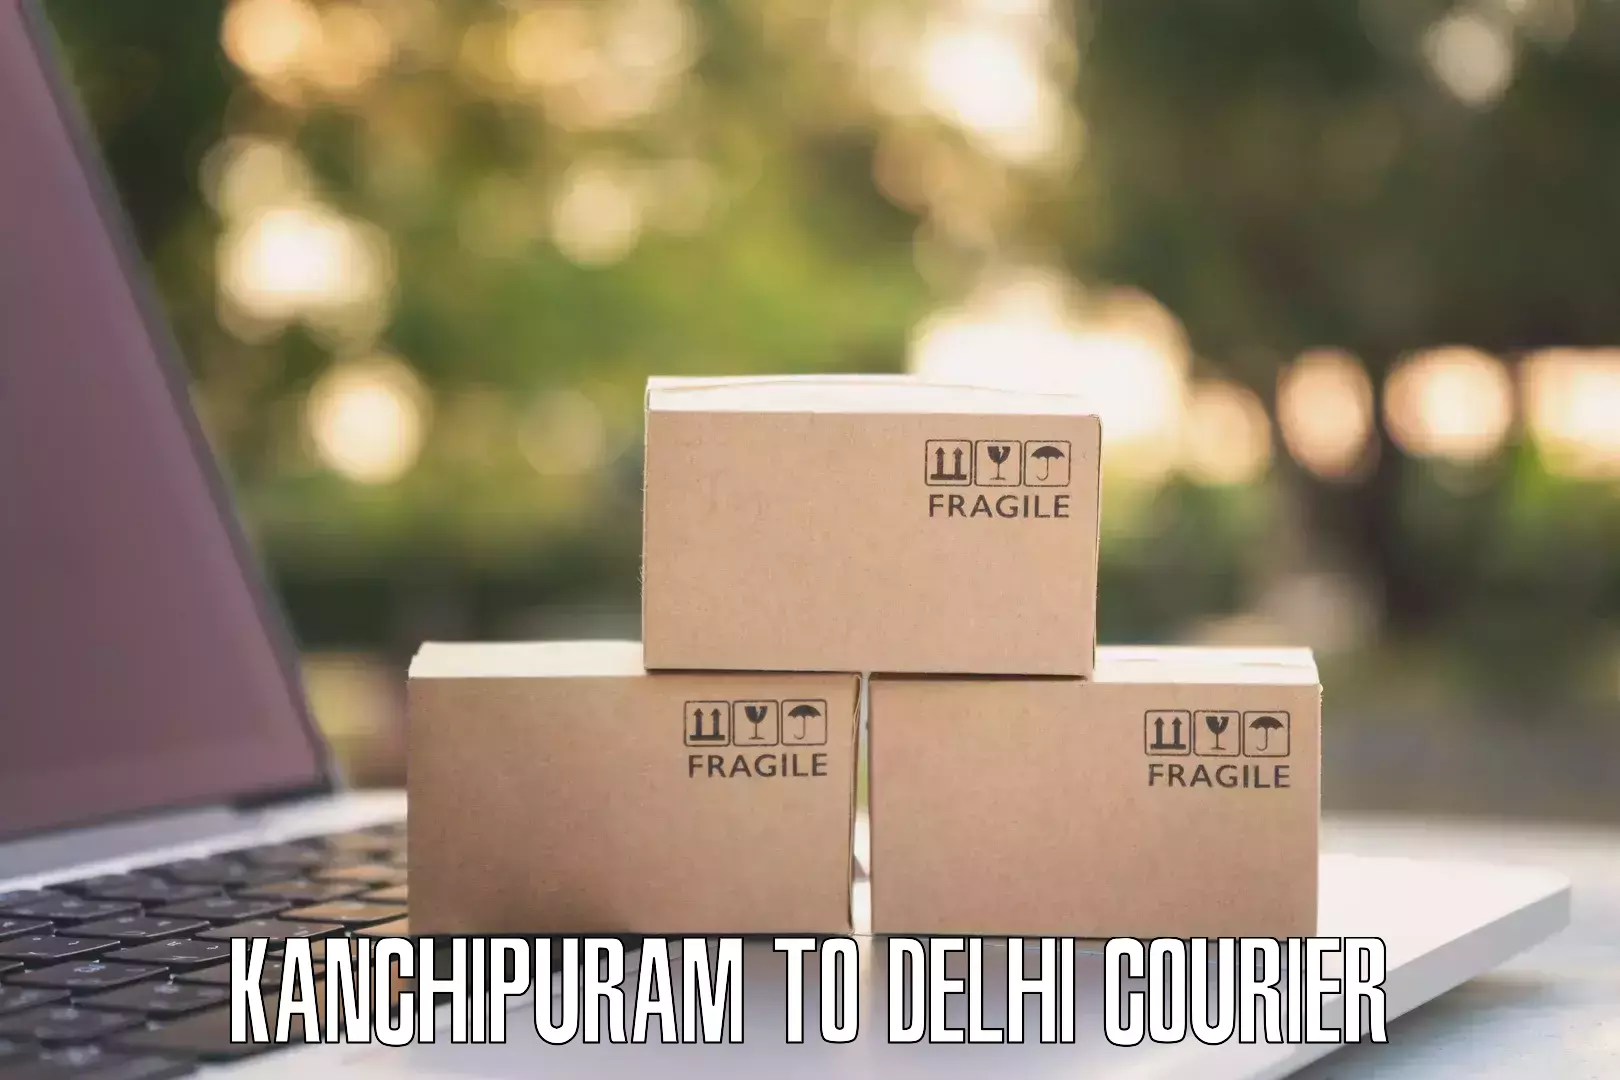 Door-to-door shipping Kanchipuram to Delhi